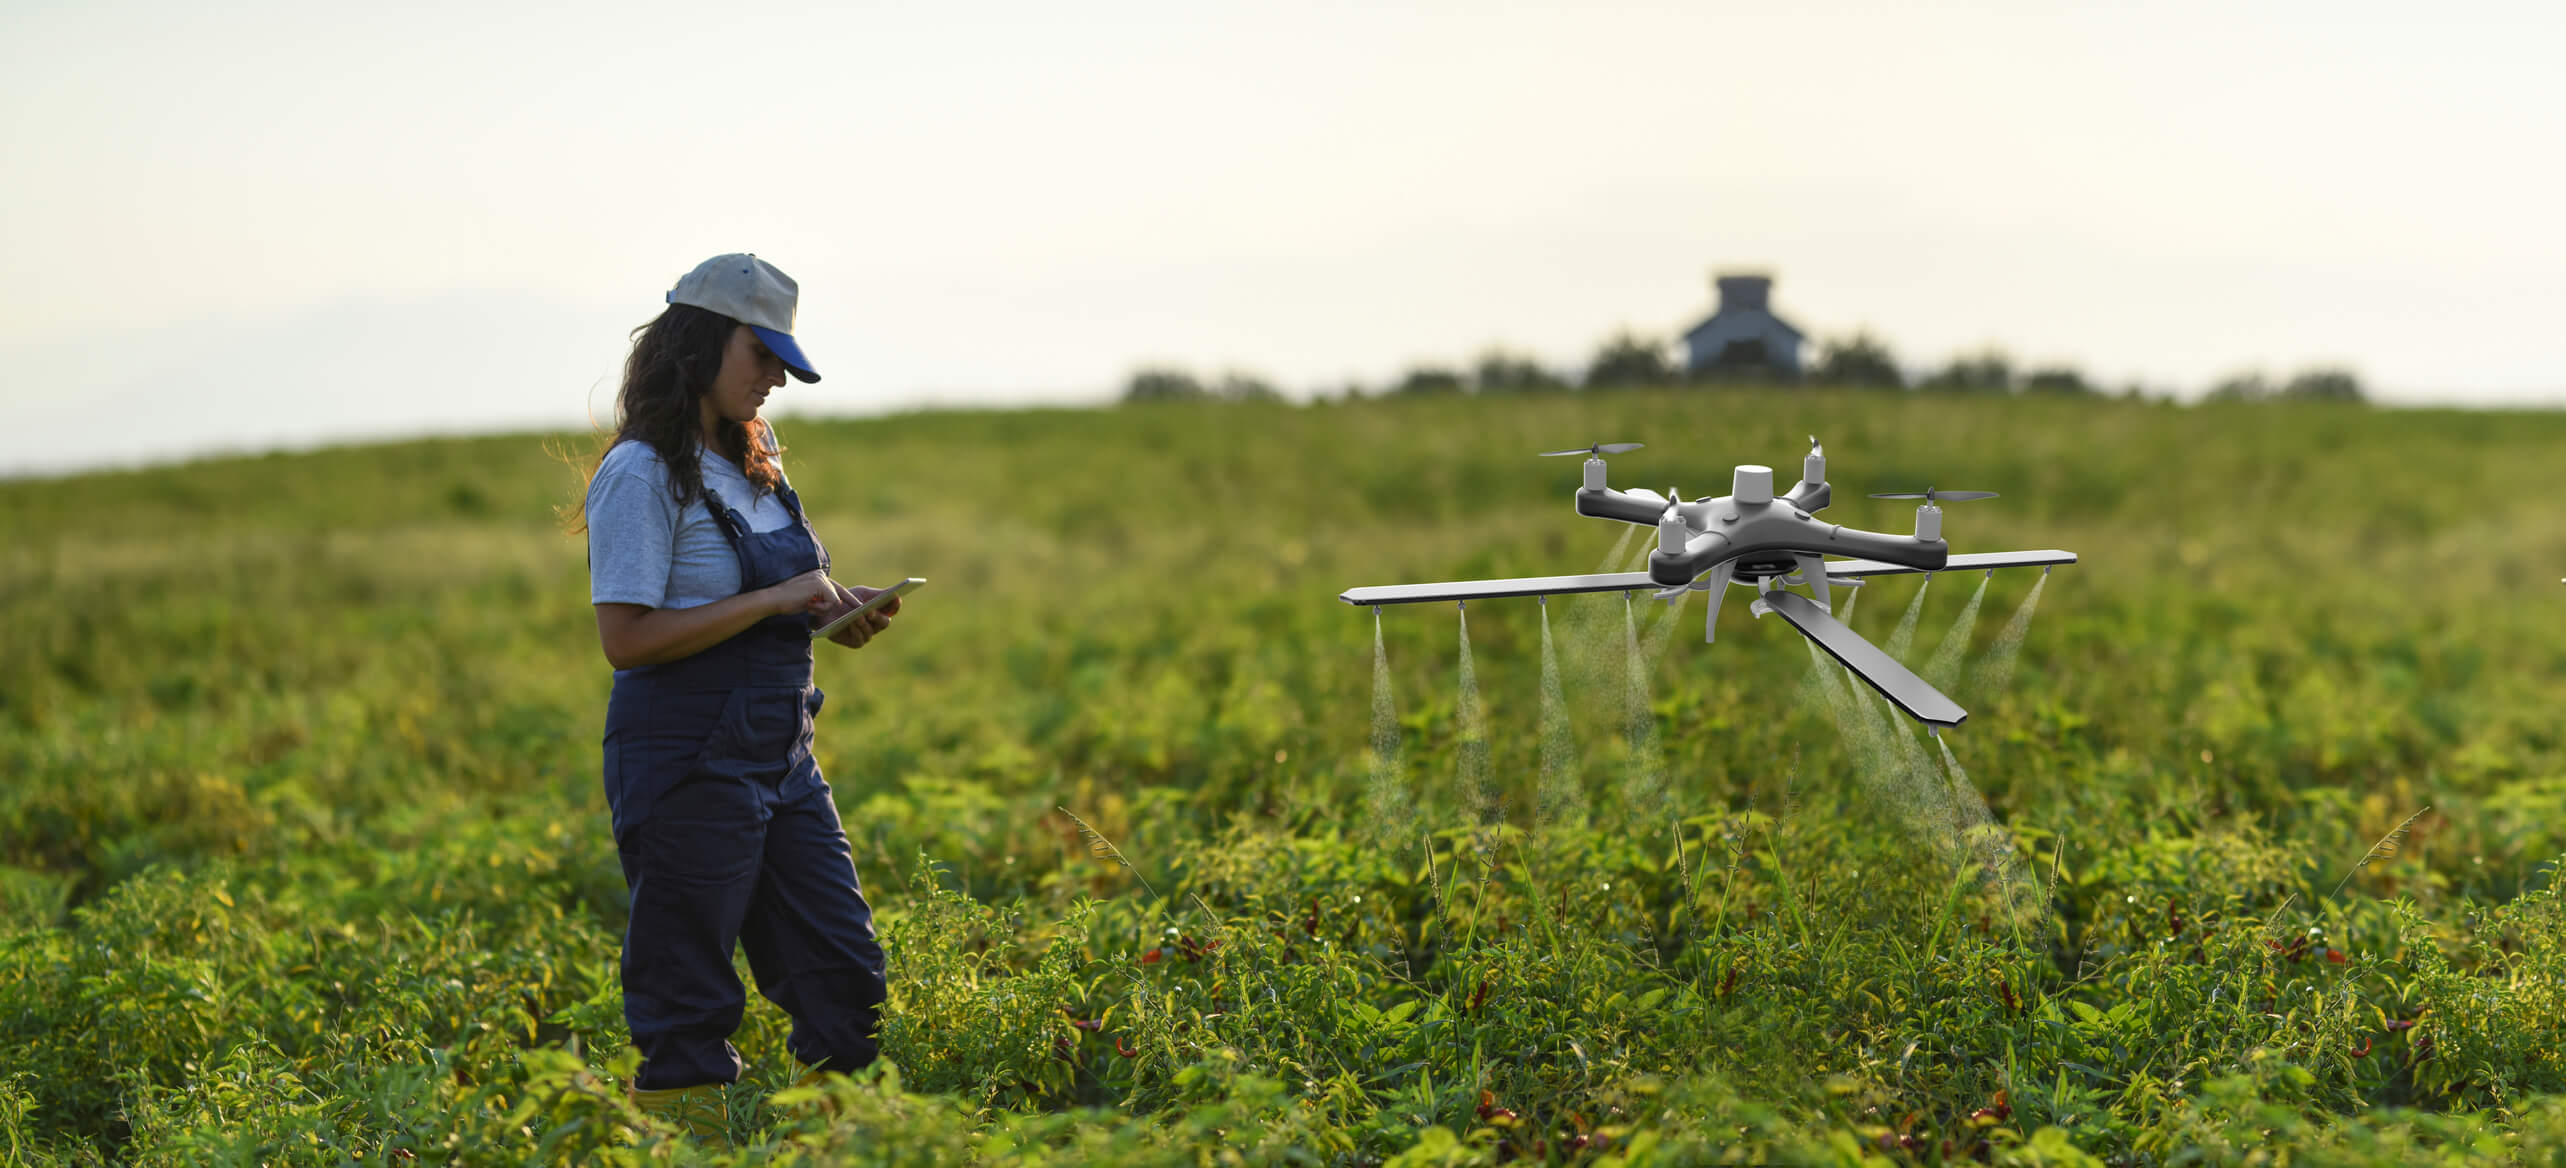 Eine Frau steuert eine Drohne auf einem Feld